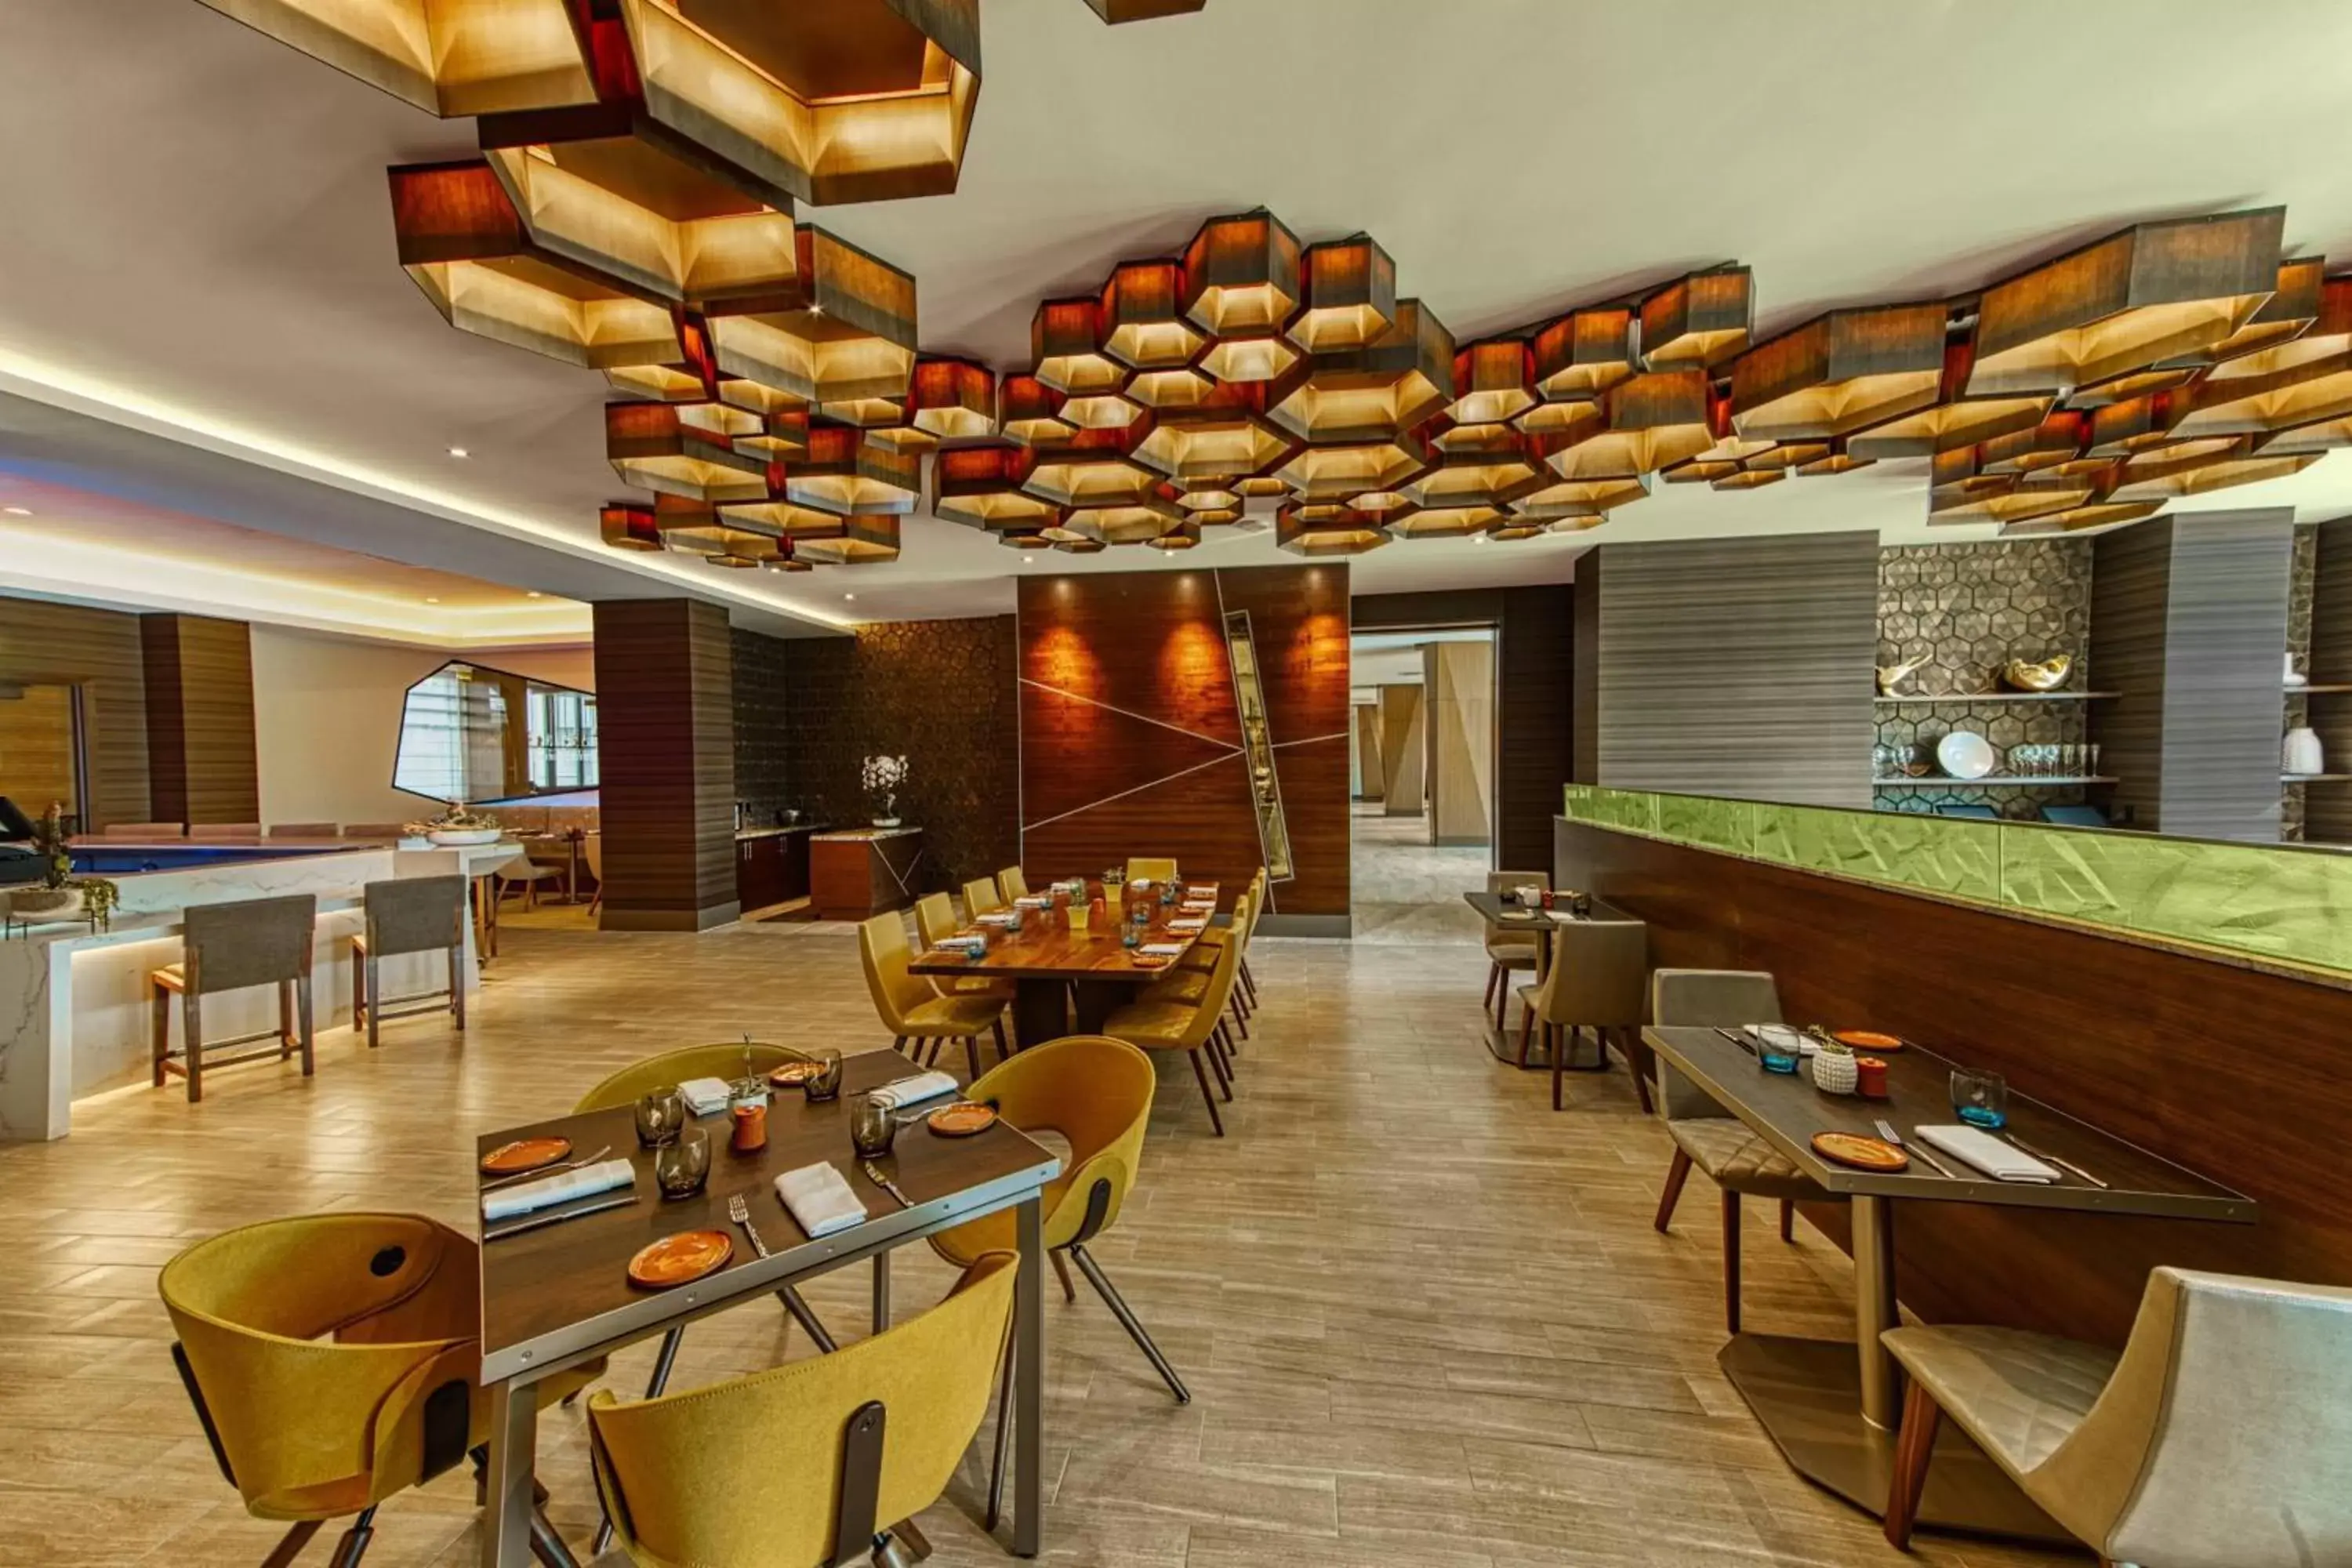 Restaurant/places to eat, Lounge/Bar in JW Marriott, Anaheim Resort